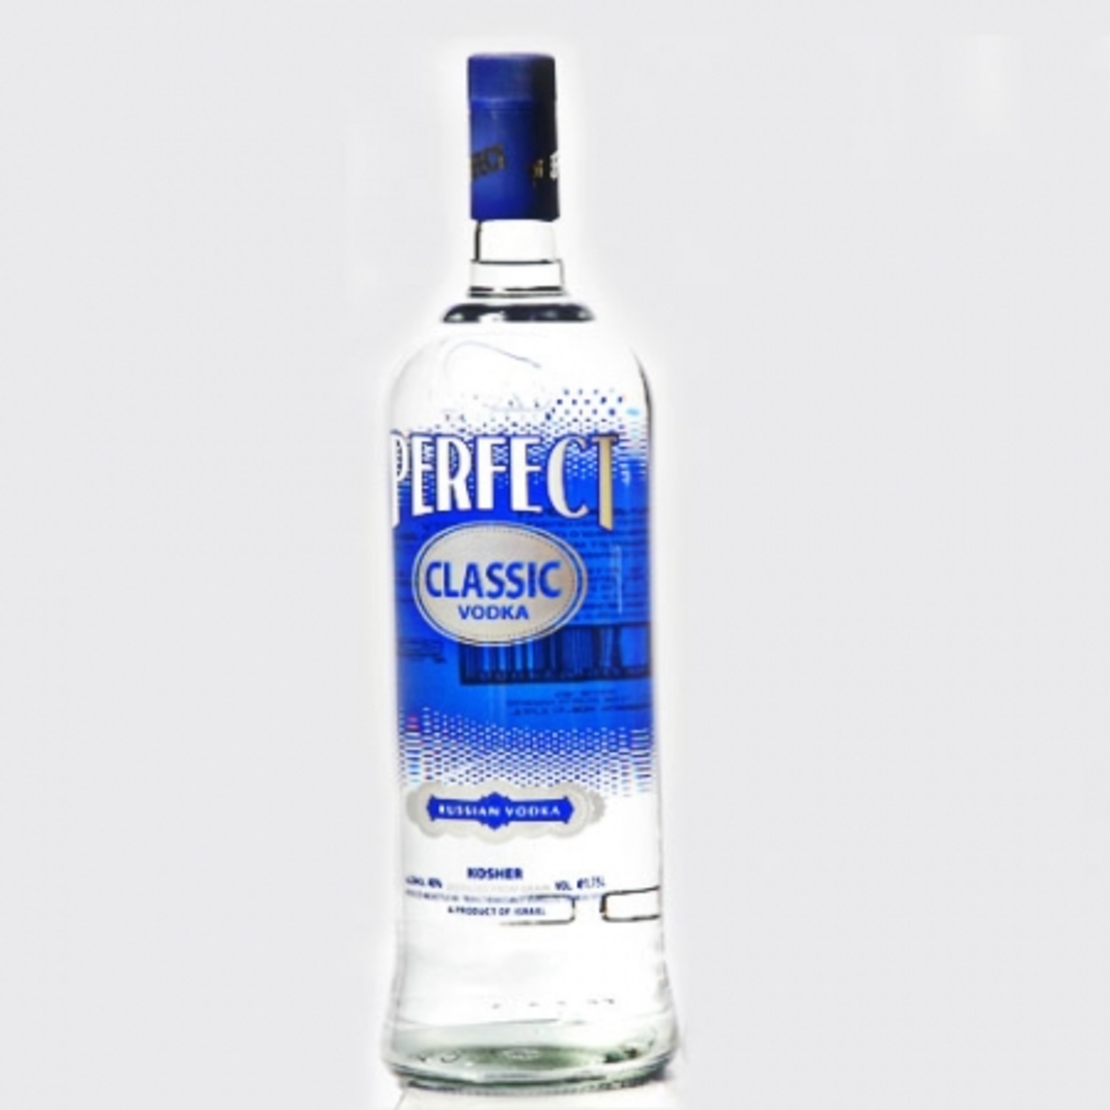 Perfect - Classic Vodka 1.75L